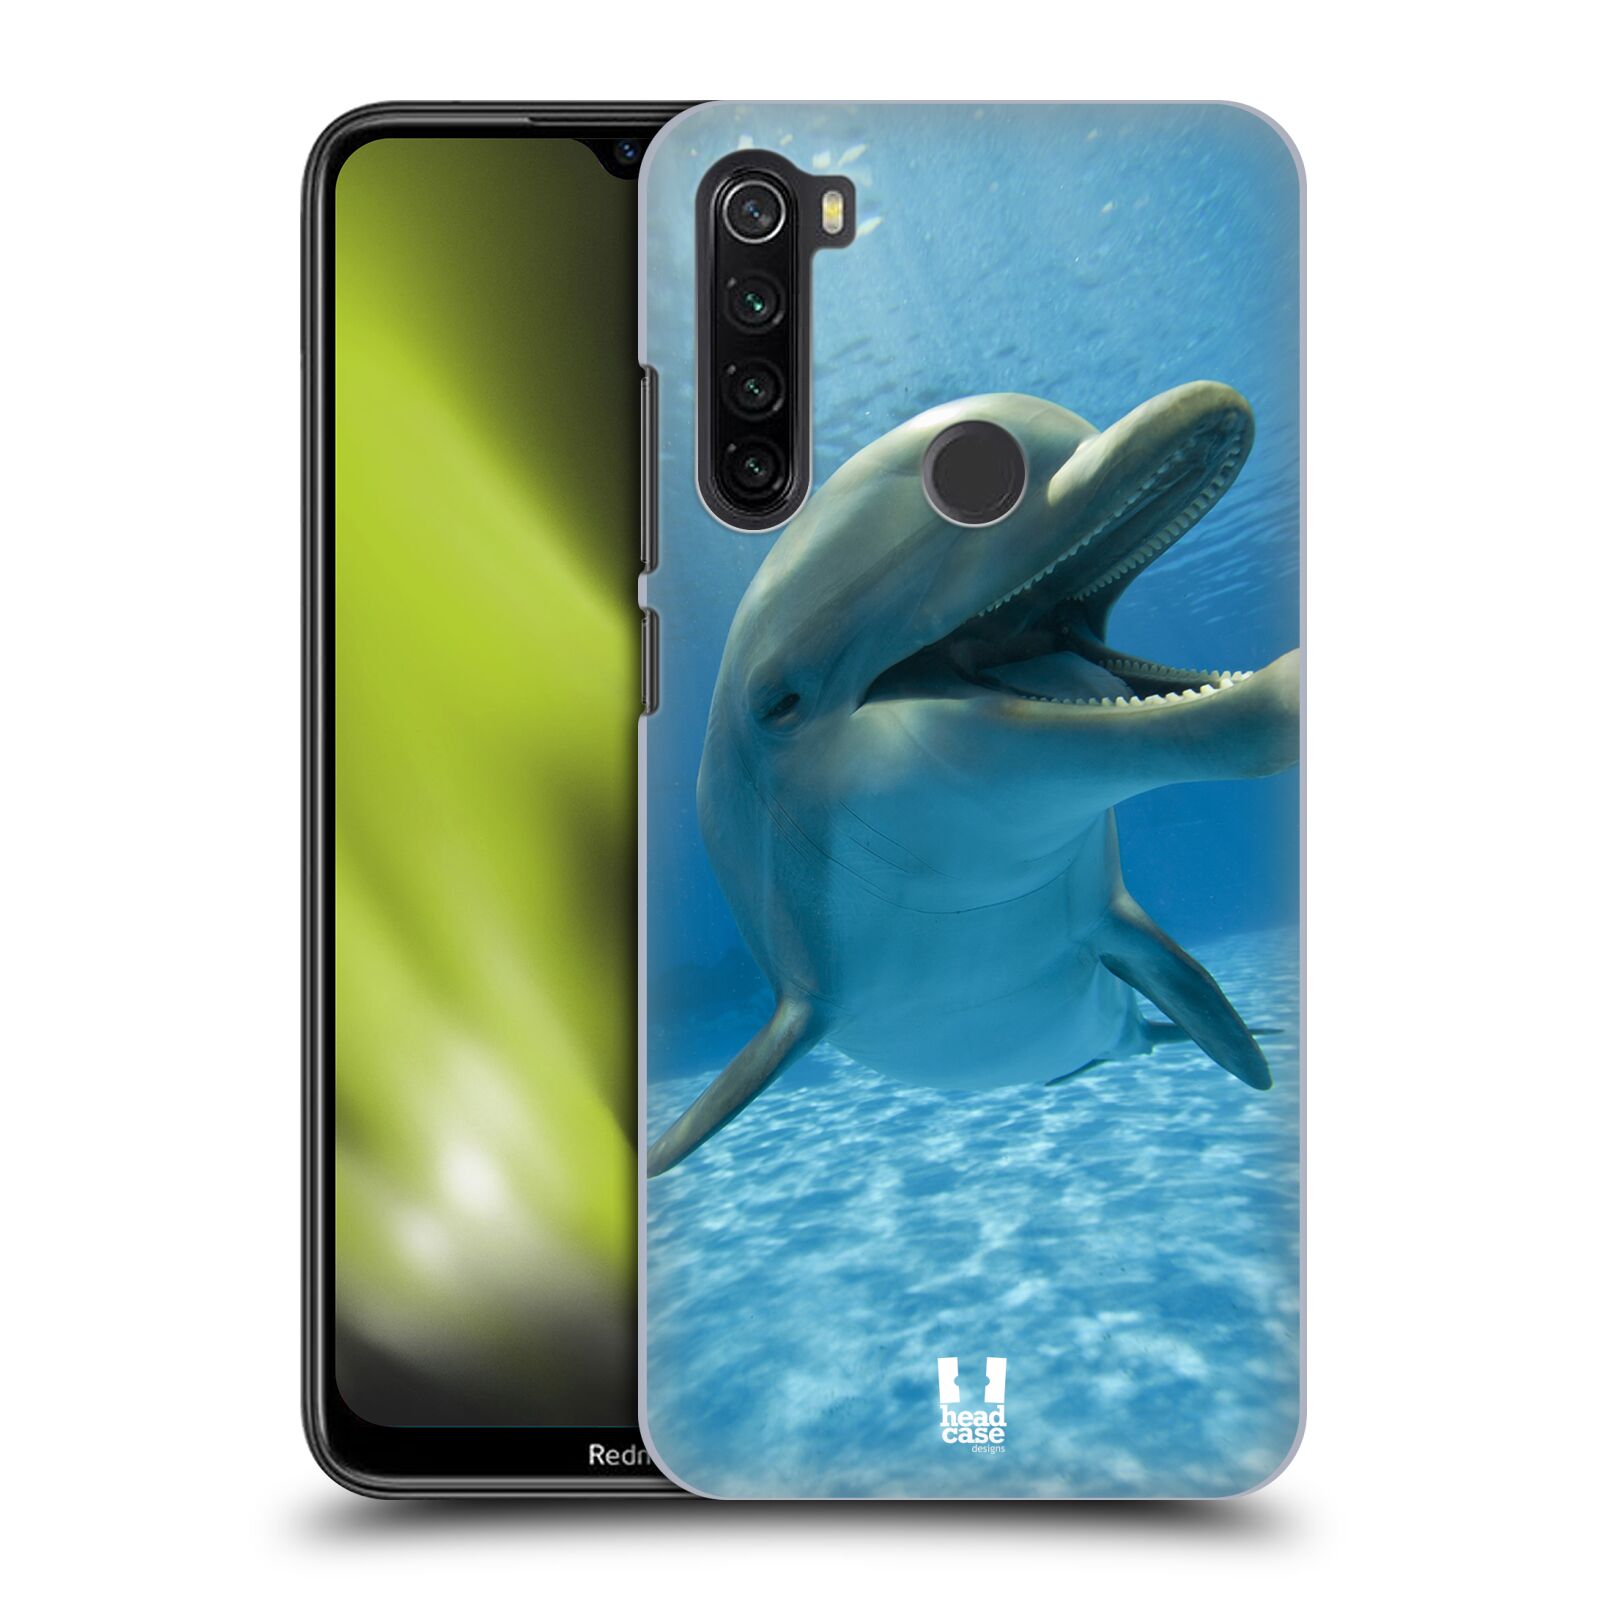 Zadní obal pro mobil Xiaomi Redmi Note 8T - HEAD CASE - Svět zvířat delfín v moři